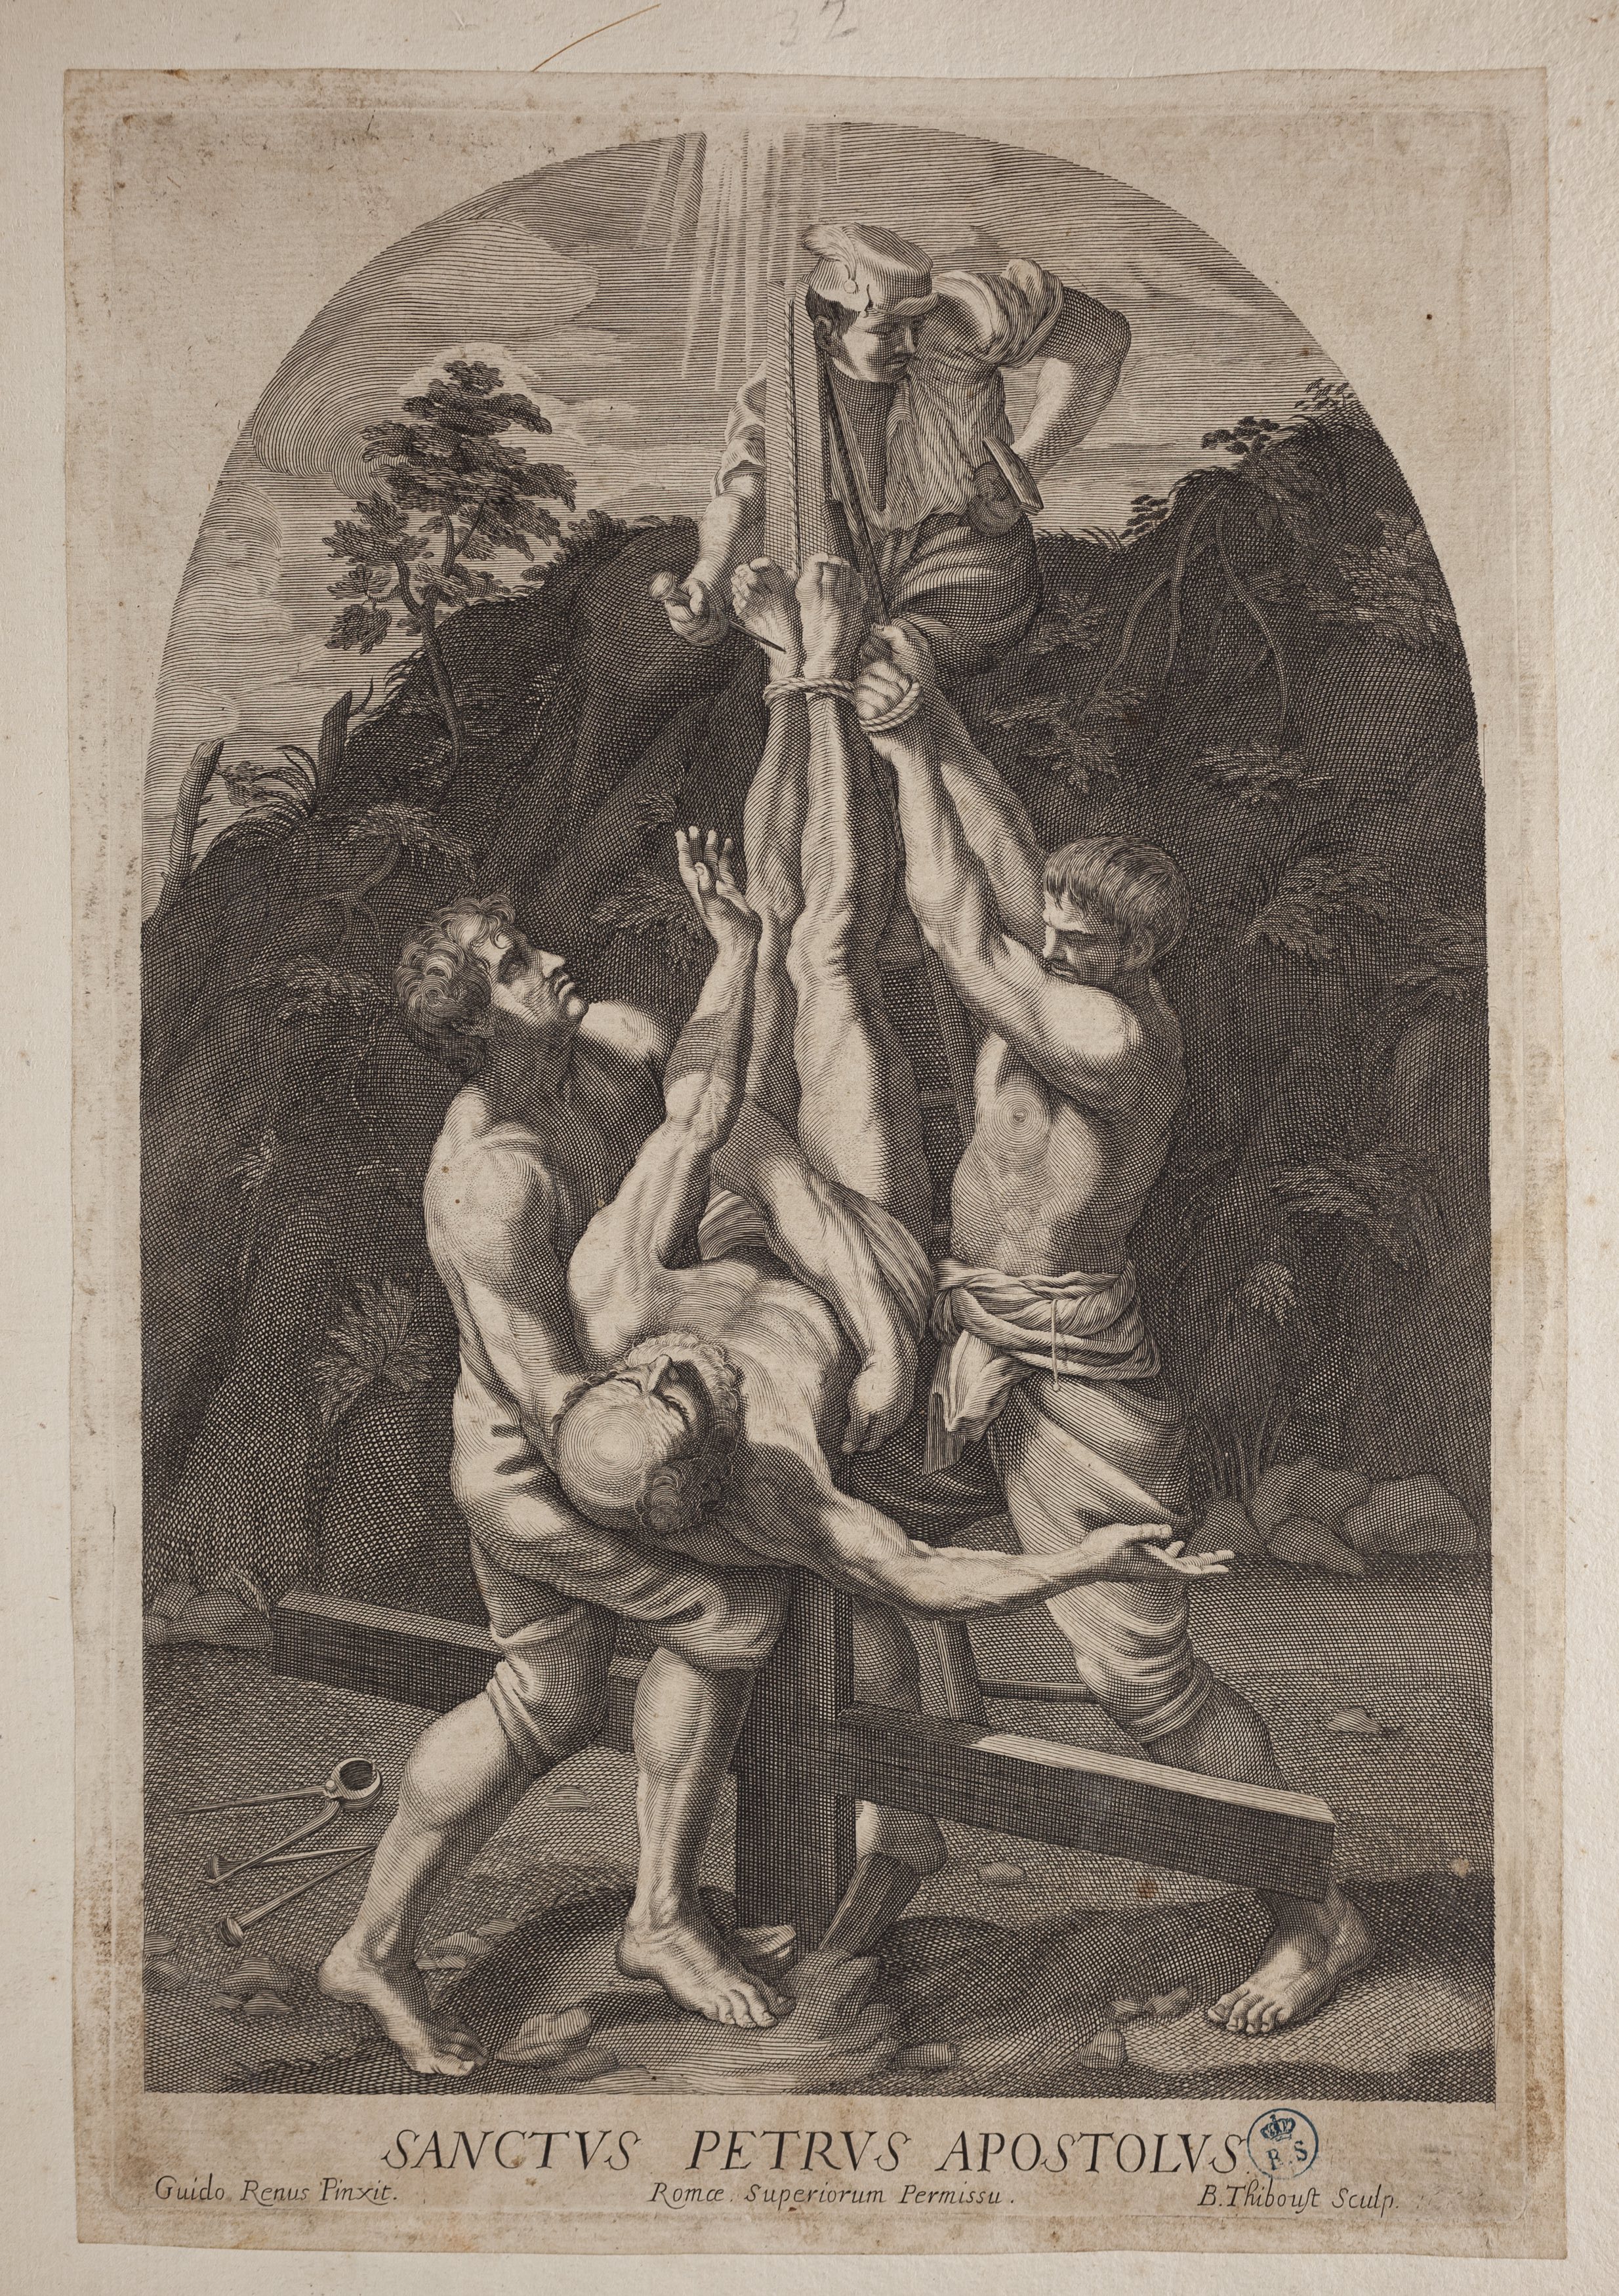 La crocifissione di san Pietro, crocifissione di san Pietro (stampa controfondata tagliata) di Guido Reni, Thiboust Benoît (metà/ metà XVII-XVIII)